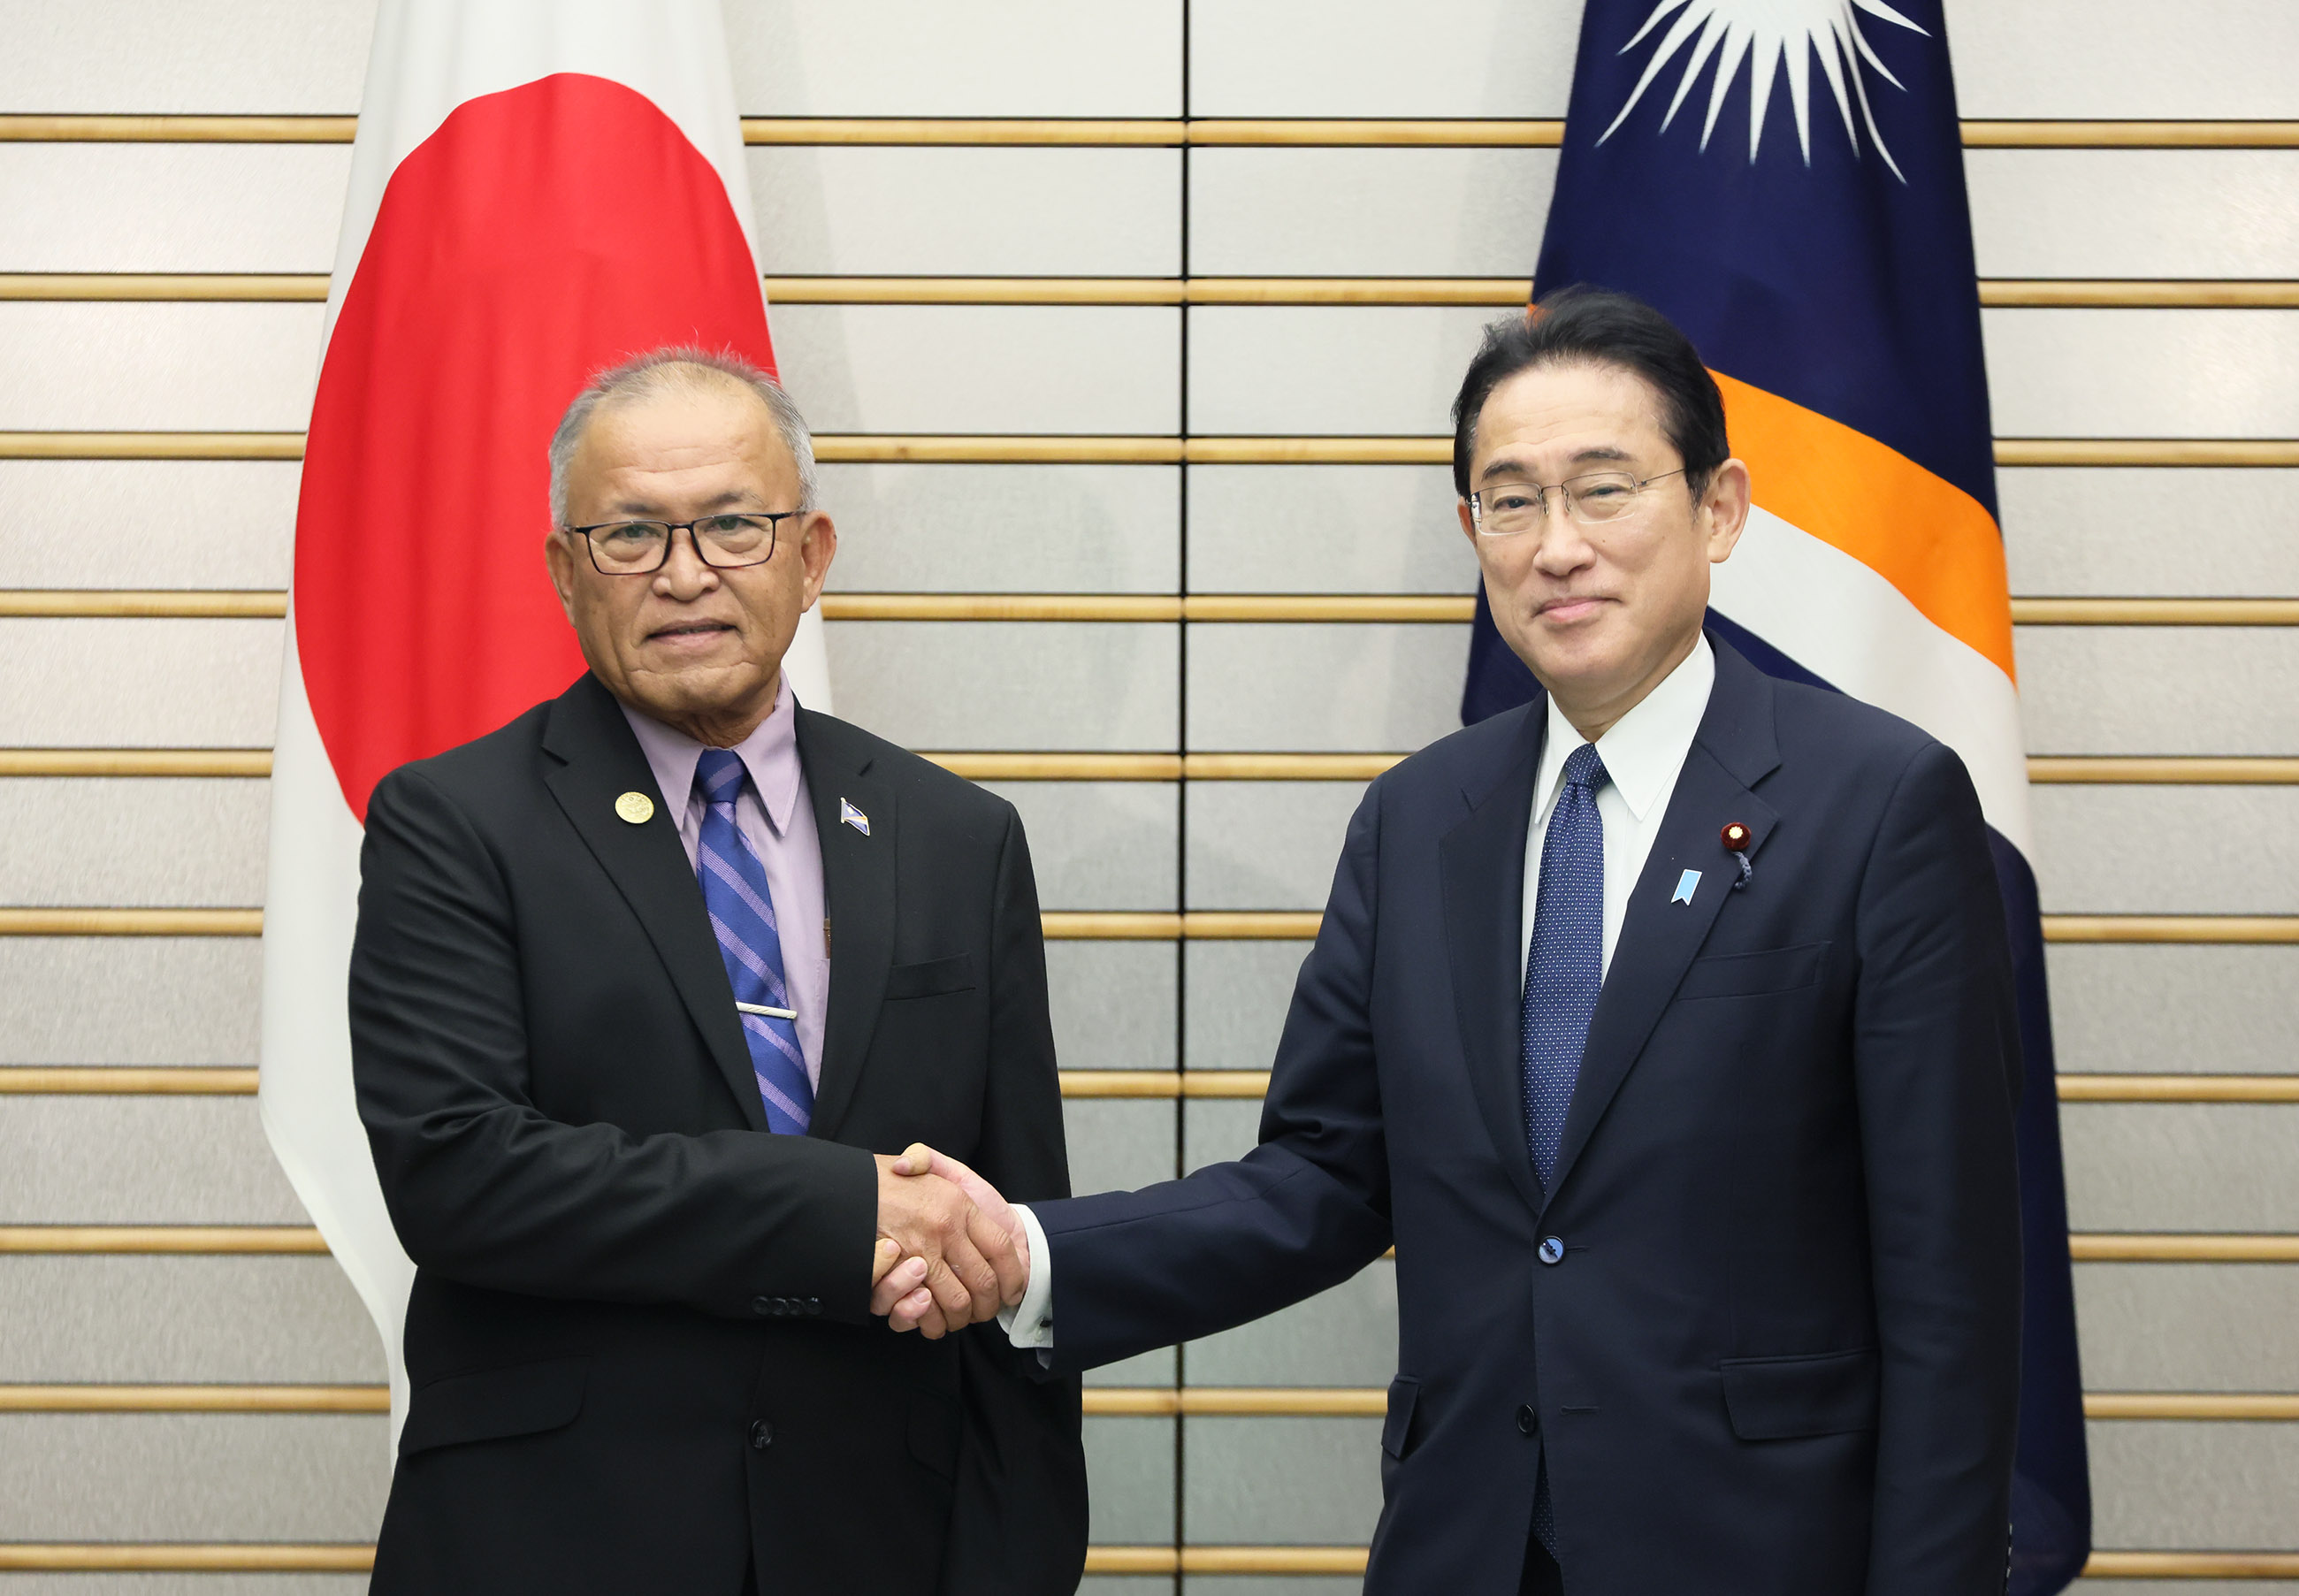 Japan-Marshall Islands Summit Meeting